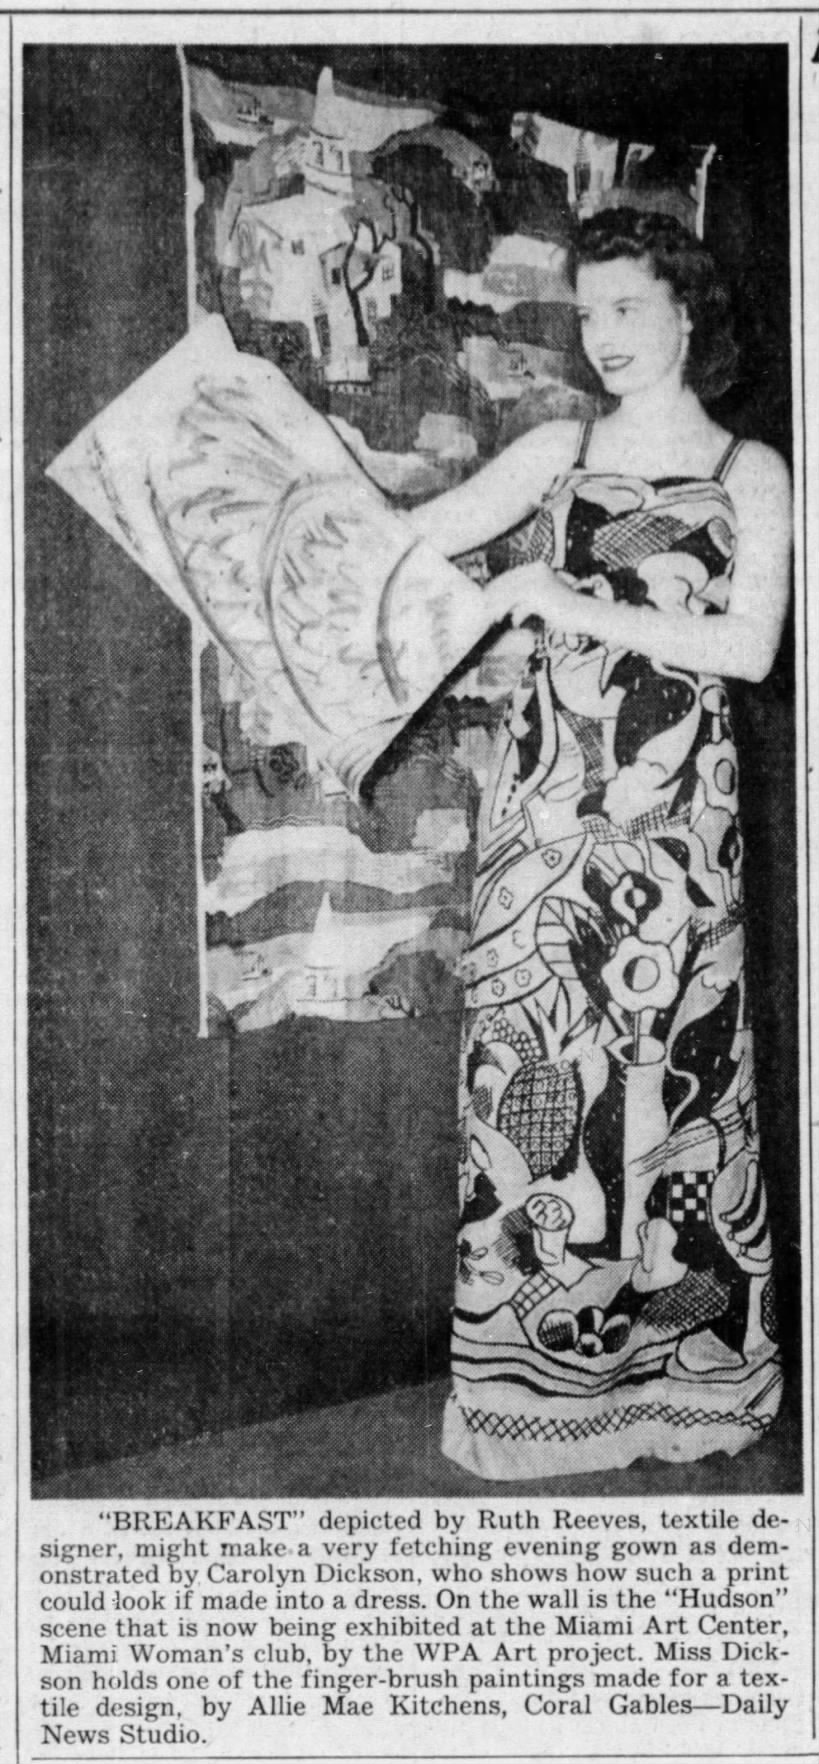 The Miami News (Miami, Florida)15 Aug 1941, FriPage 7